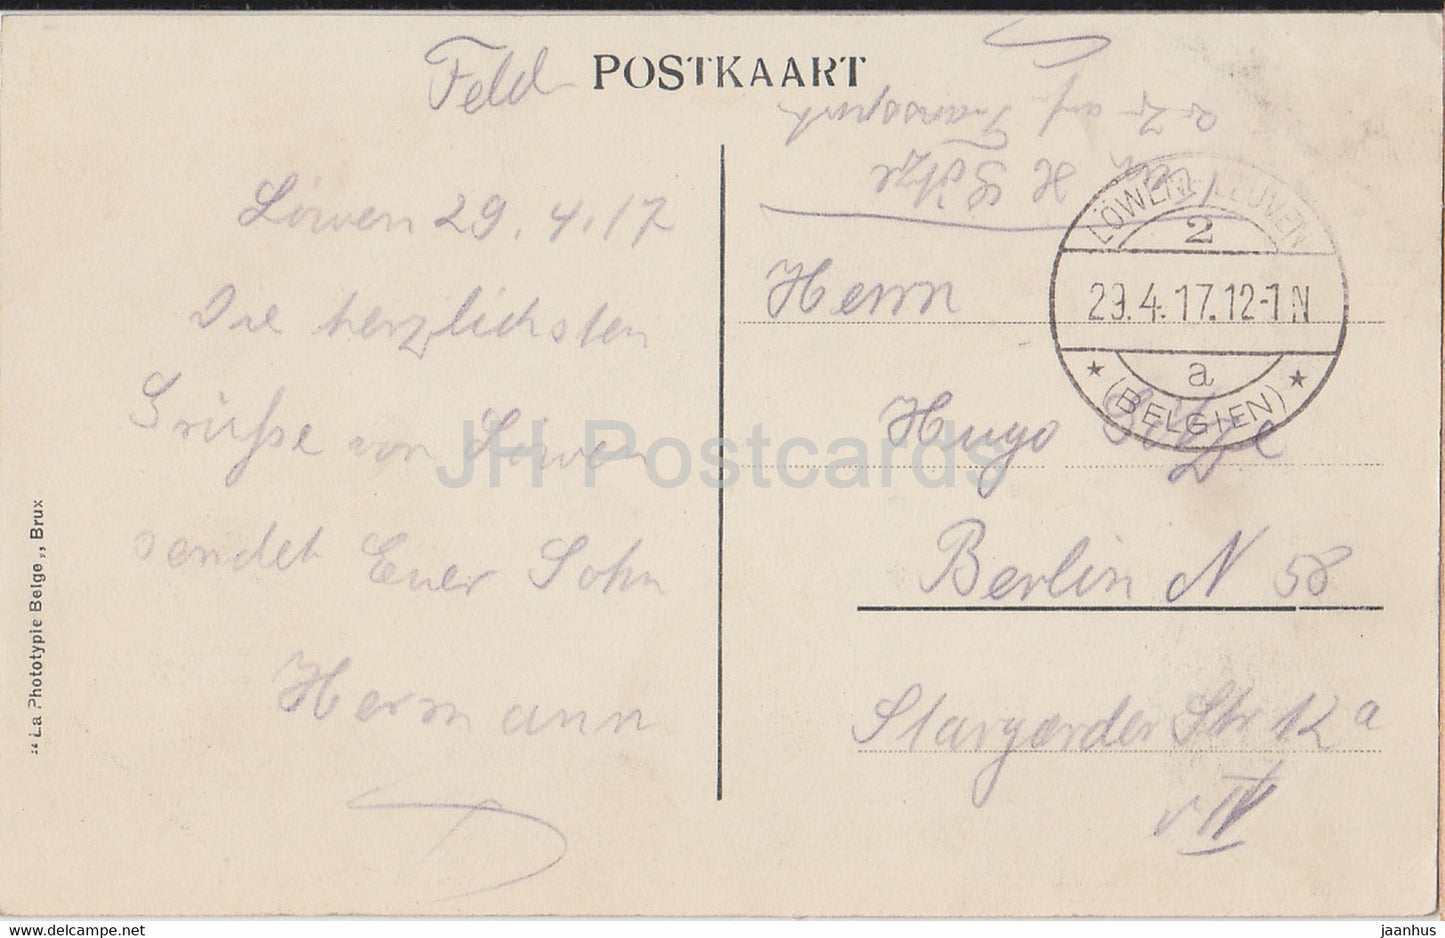 Löwen - Löwen - Panorama - Algemeen Zicht - Feldpost - alte Postkarte - 1917 - Belgien - gebraucht